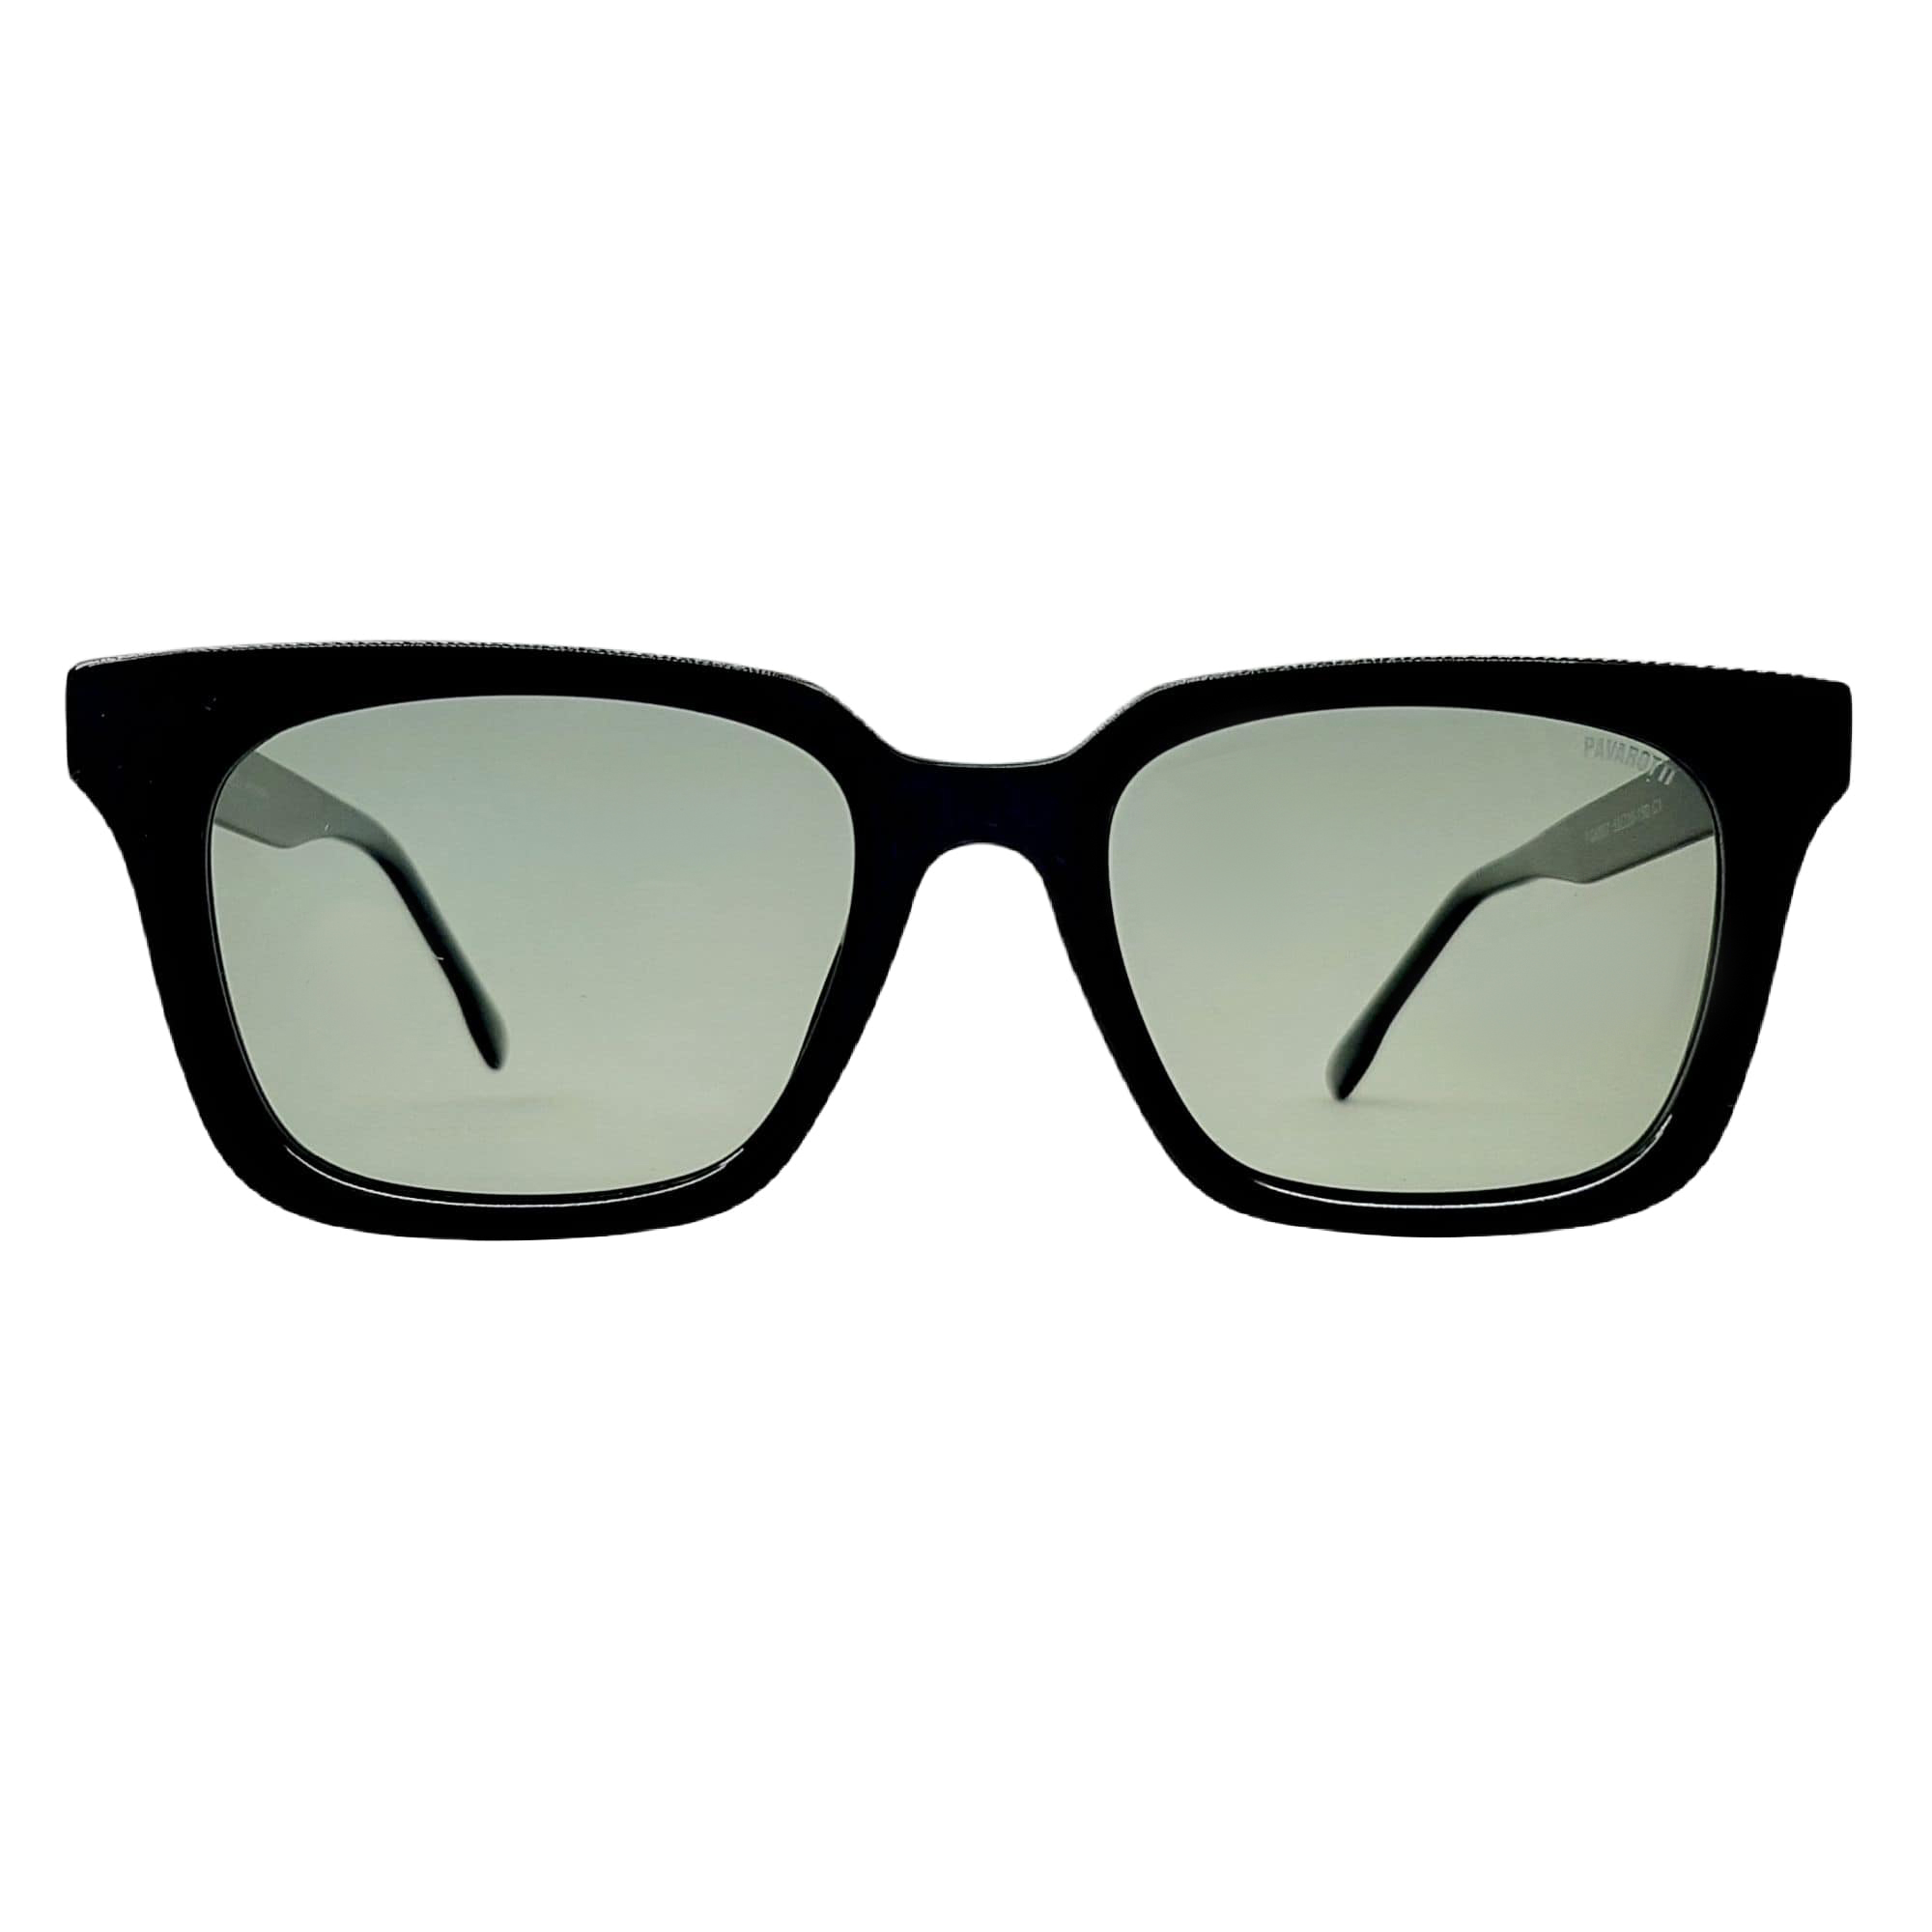 عینک آفتابی پاواروتی مدل FG6007c1